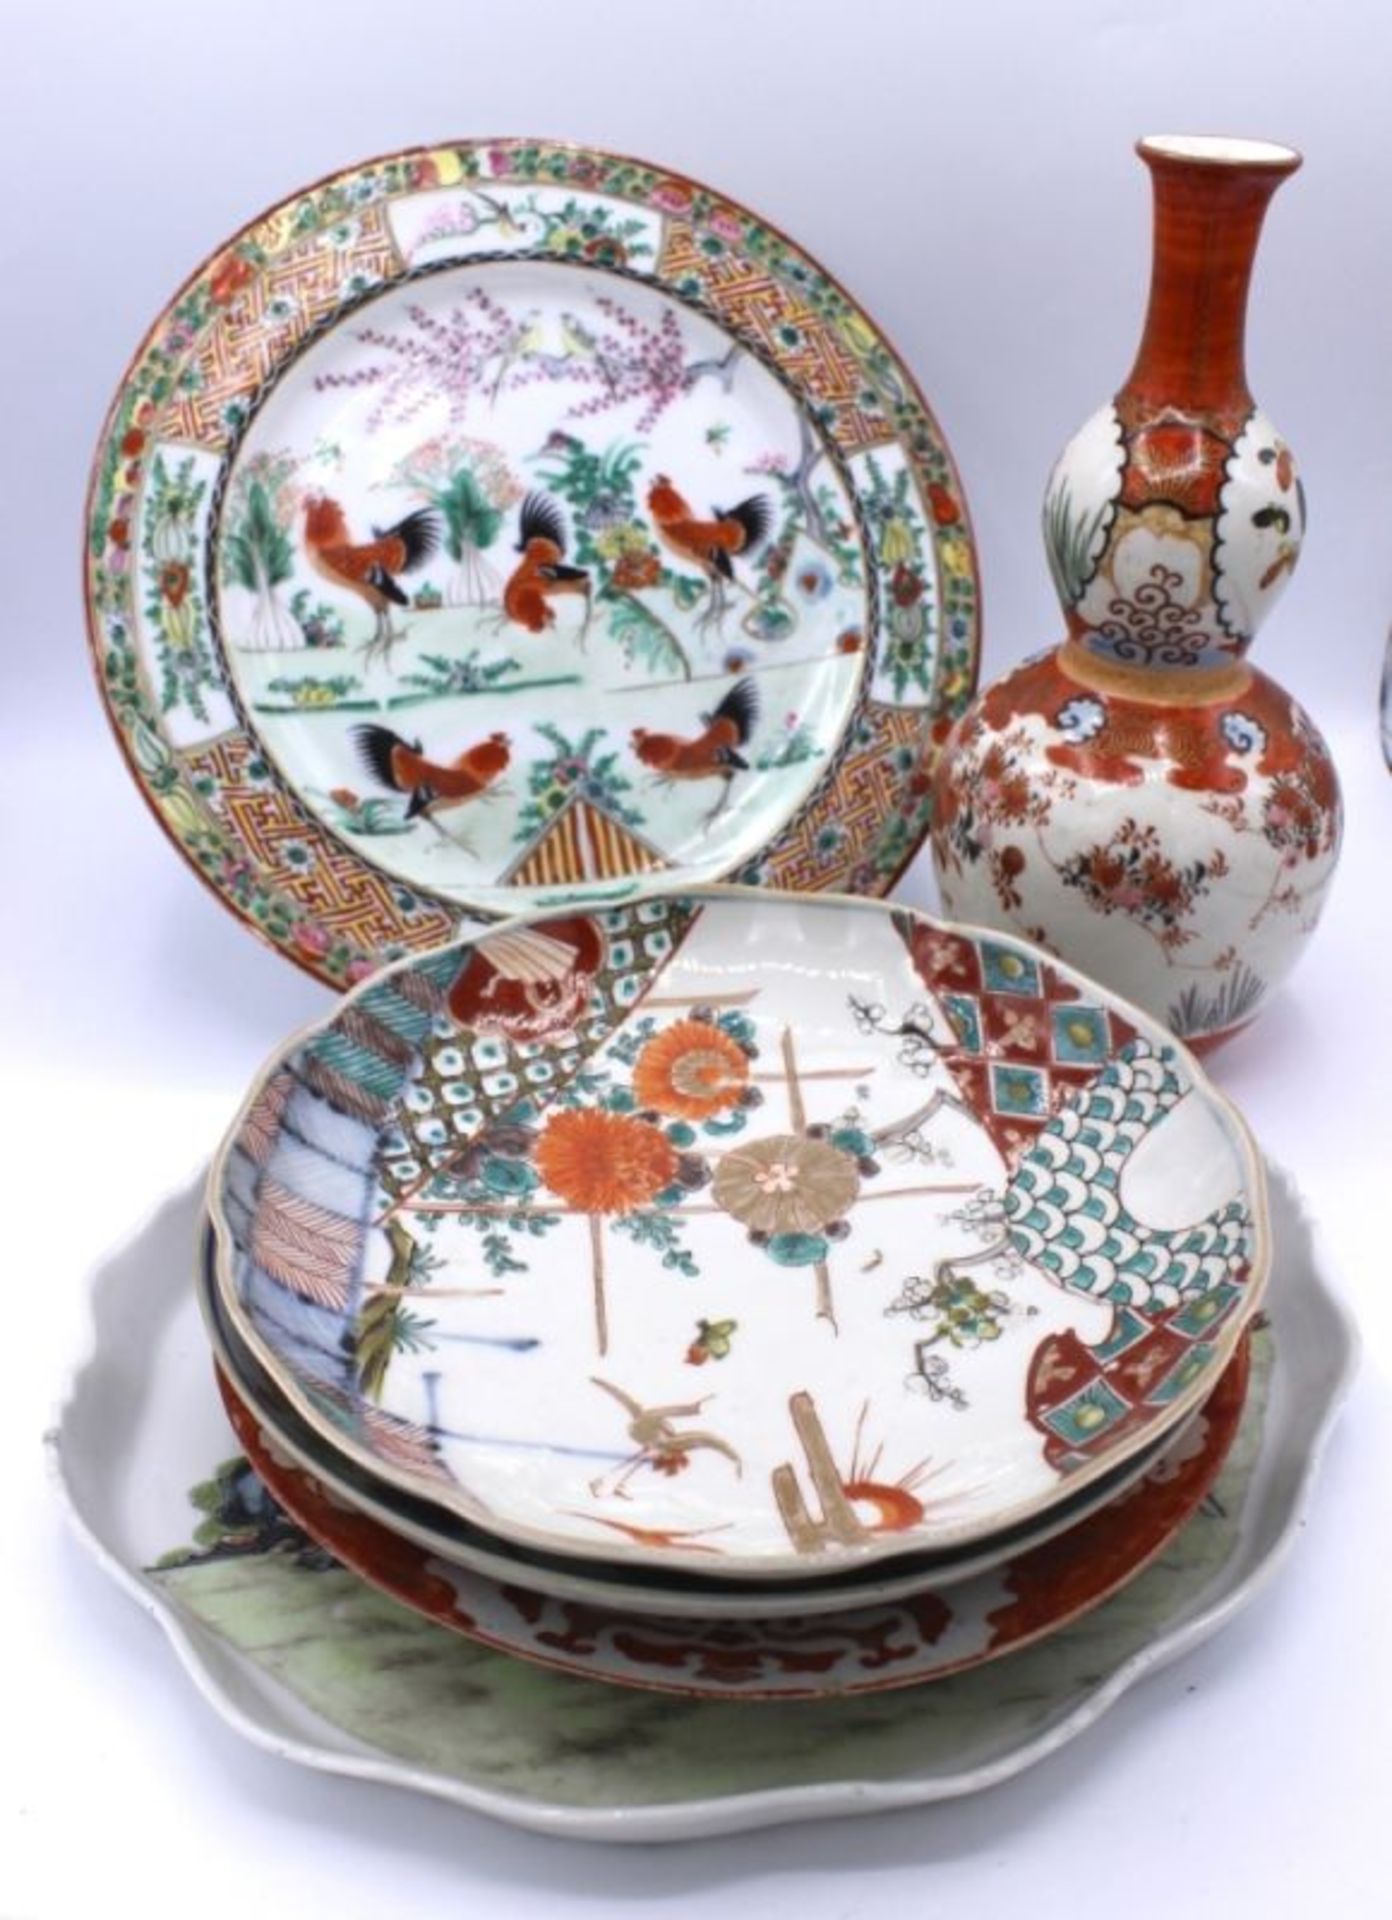 Lot Porzellan - China 19./20.Jahrhundert teilweise gemarkt, weißer Scherben bemalt mit verschiedenen